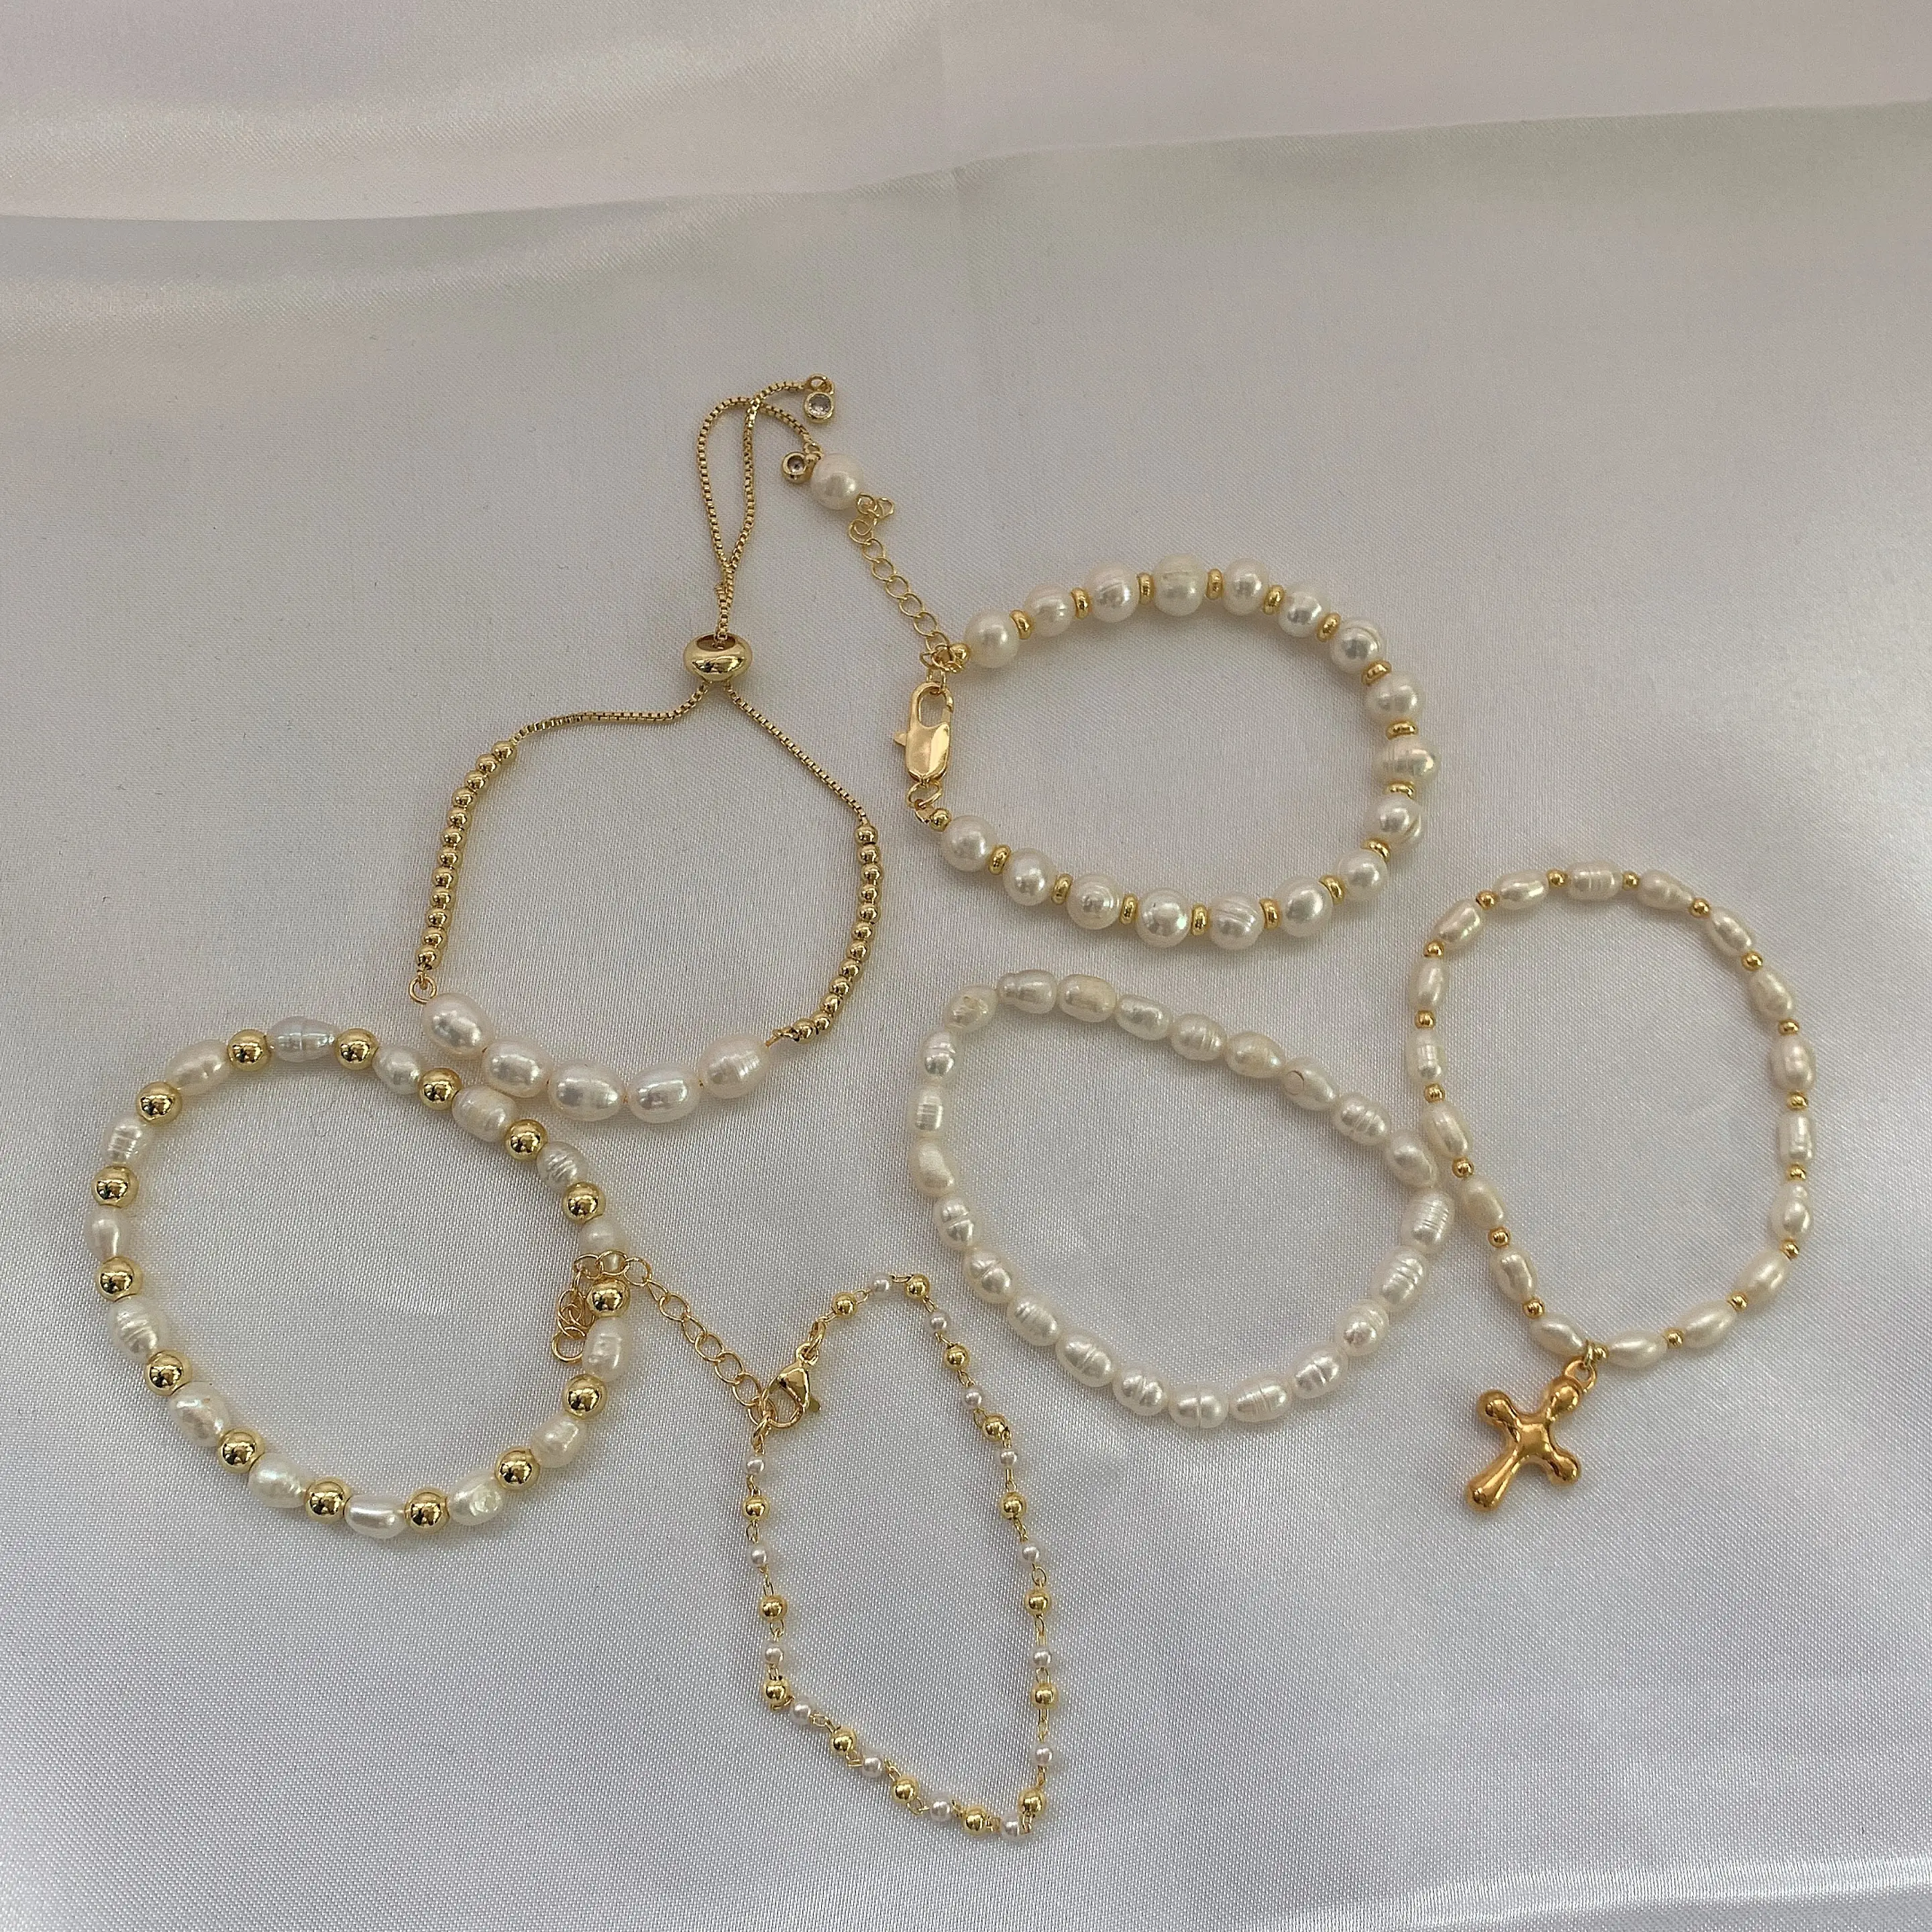 Pulsera cruzada de moda, joyería de Latón chapado en oro, perlas de agua dulce con cuentas, pulseras anudadas ajustables para mujer